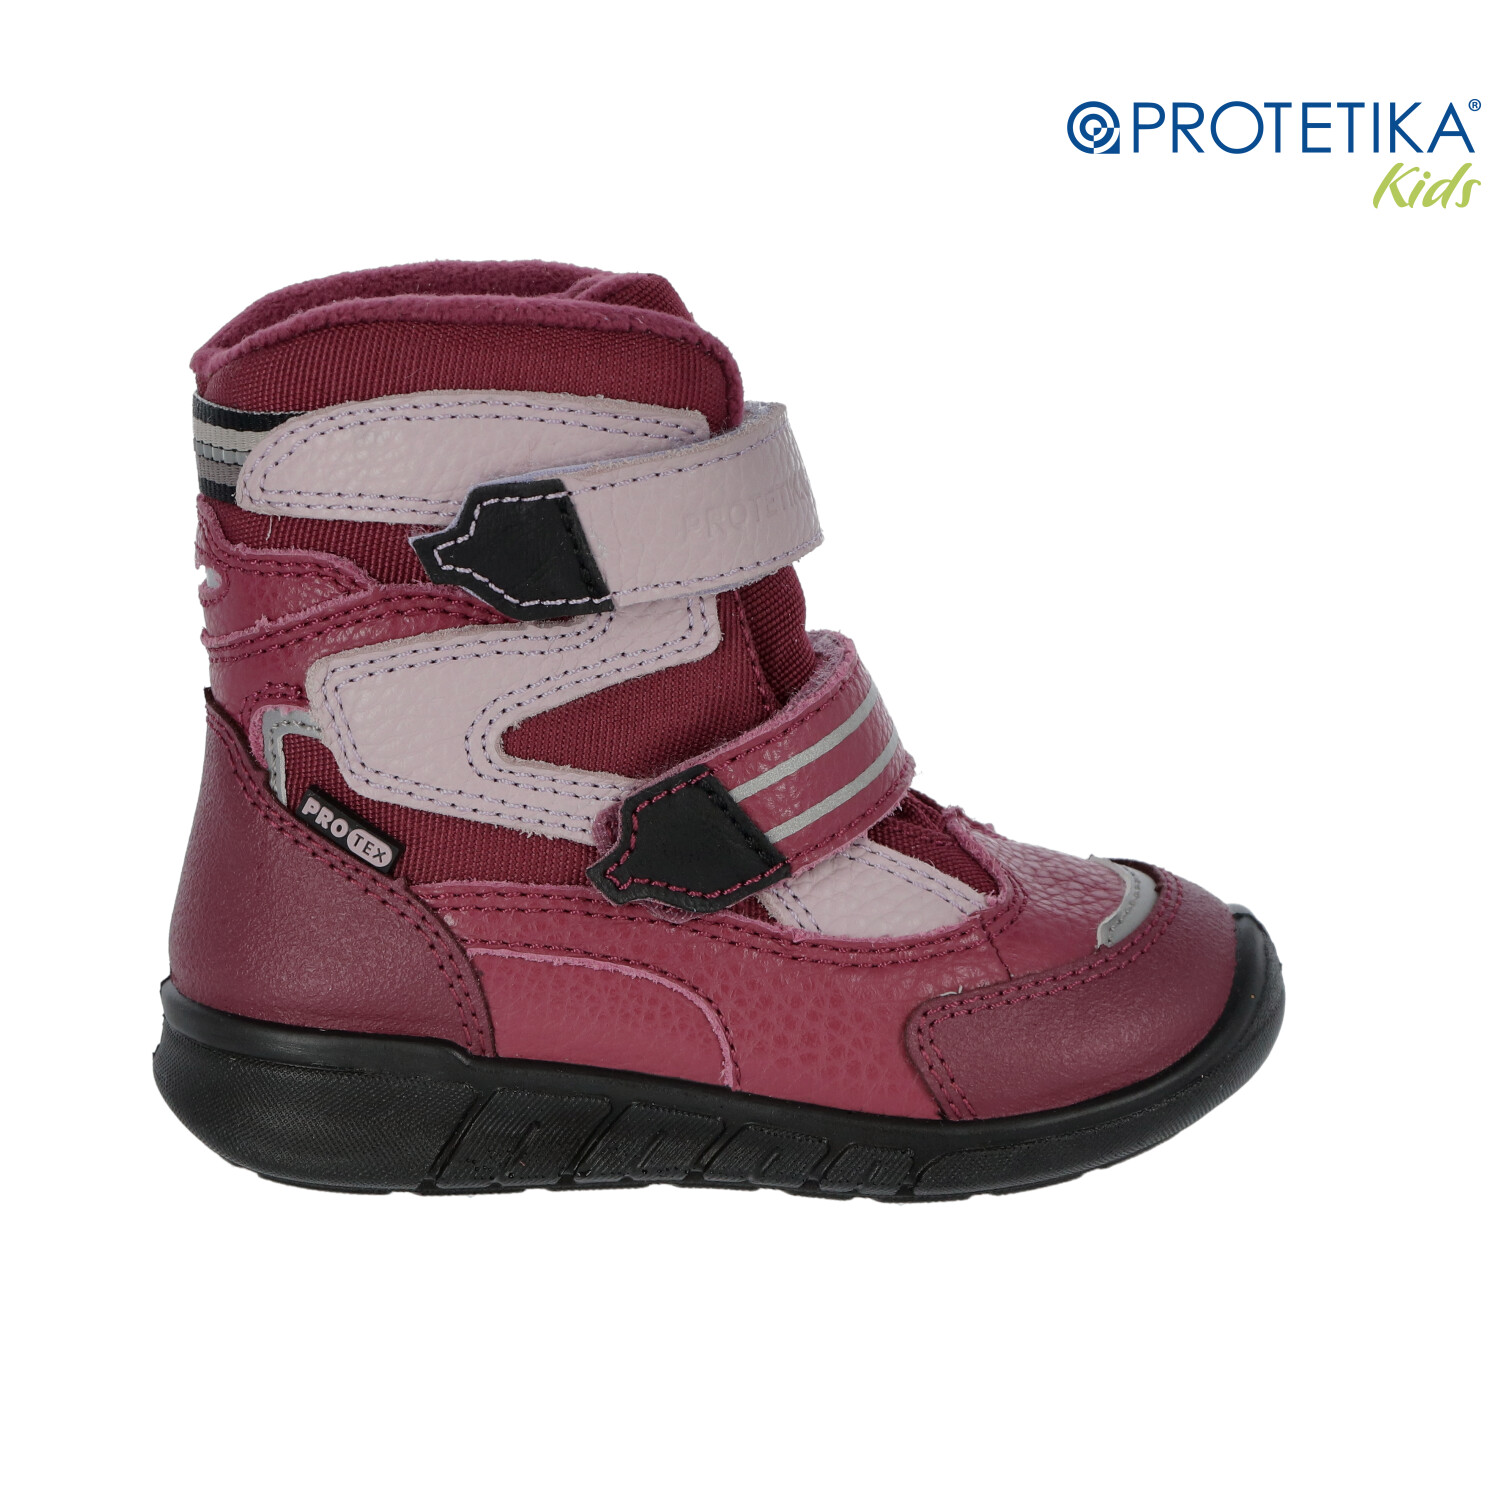 Protetika - zimné topánky s membránou PRO-tex MARON fuxia - zateplené